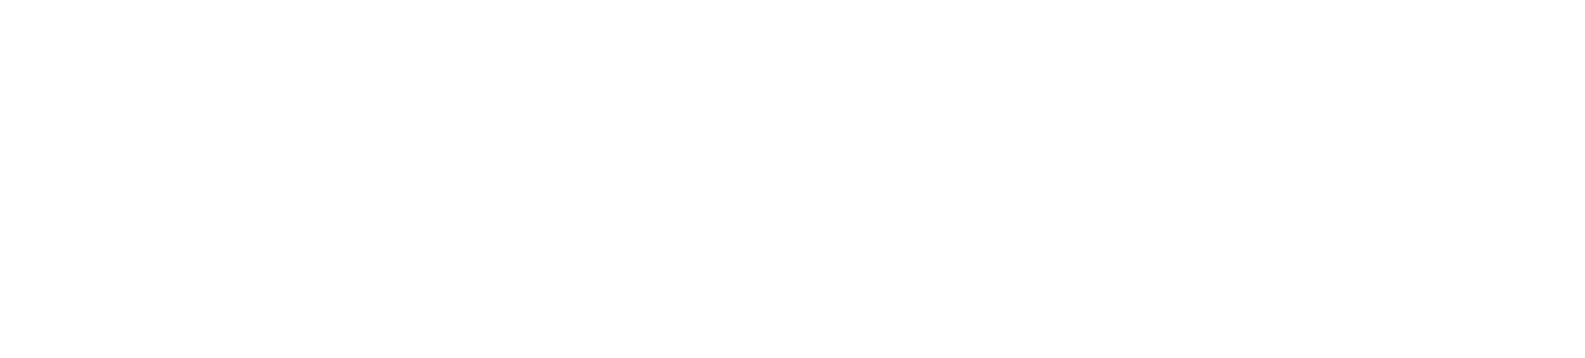 ALBA SE logo grand pour les fonds sombres (PNG transparent)